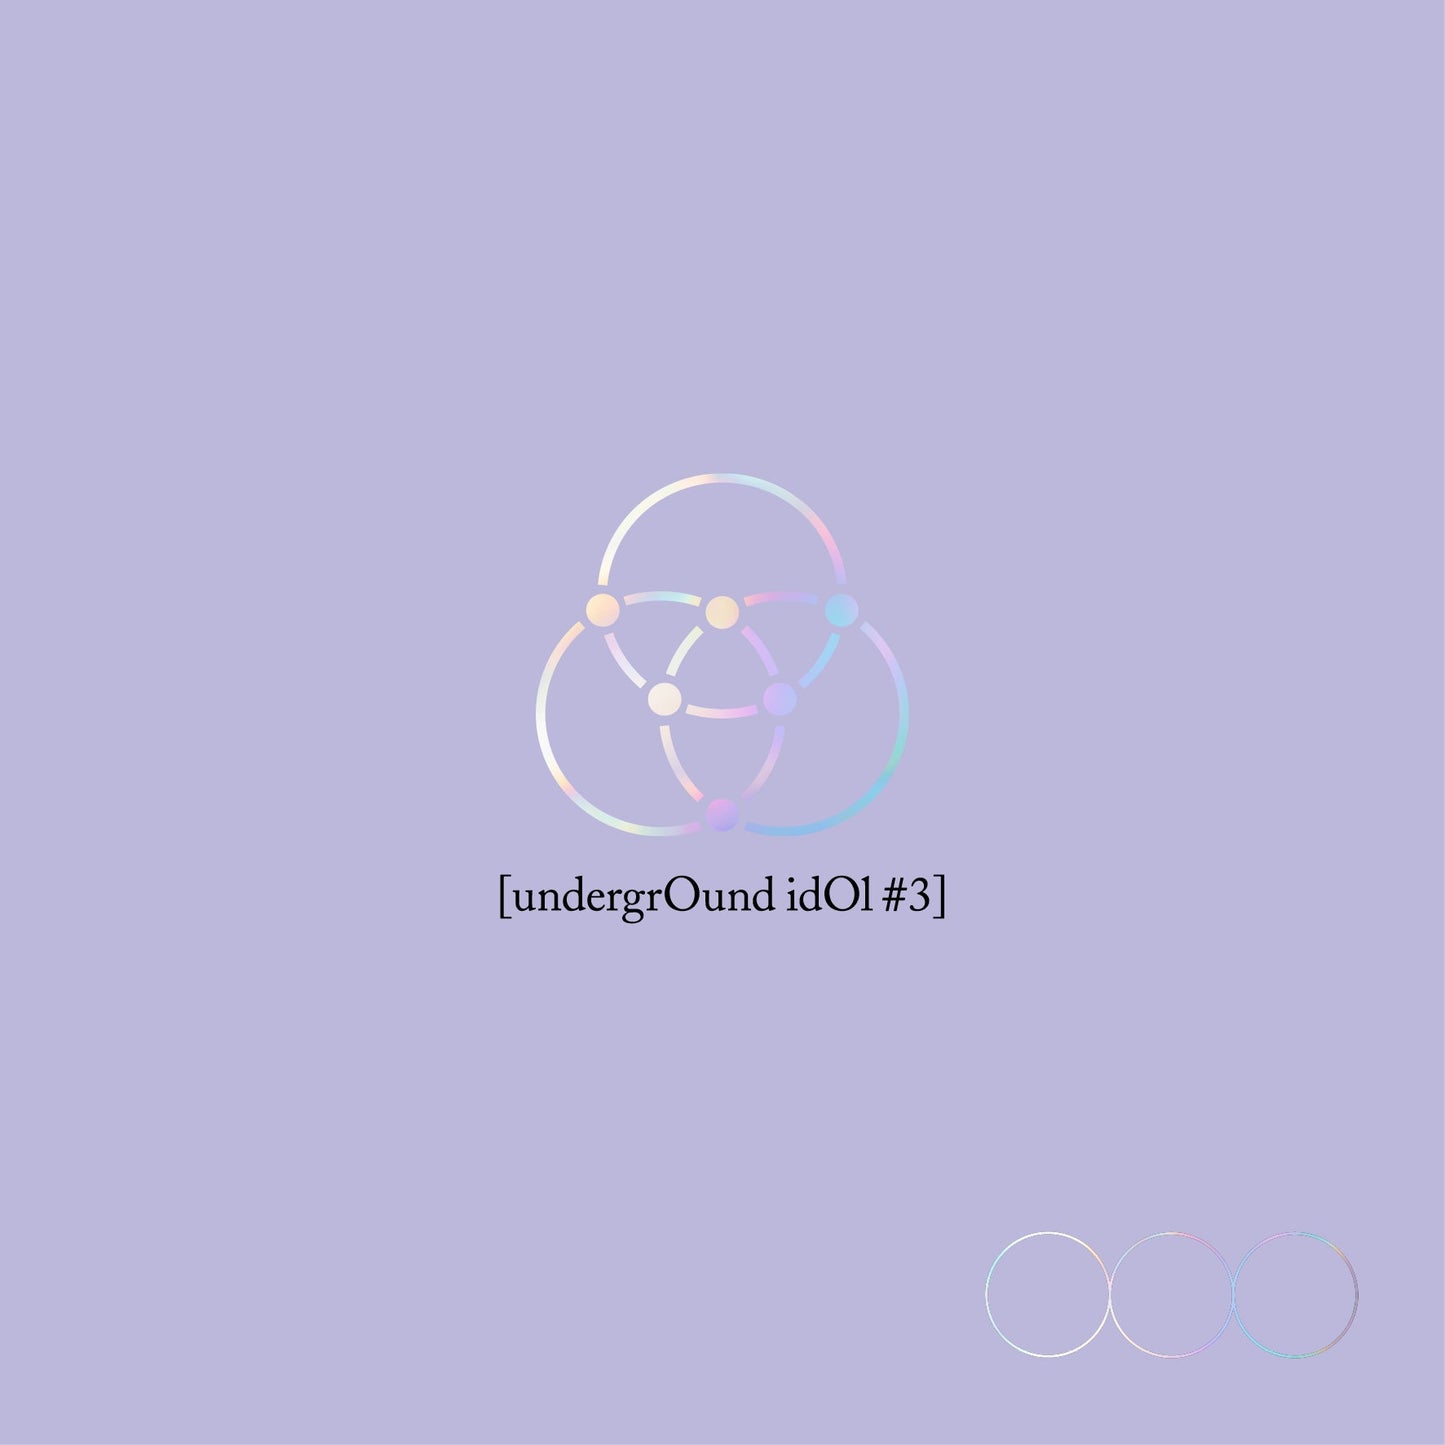 JUNJI (ONLYONEOF) ALBUM 'UNDERGROUND IDOL #3' COVER